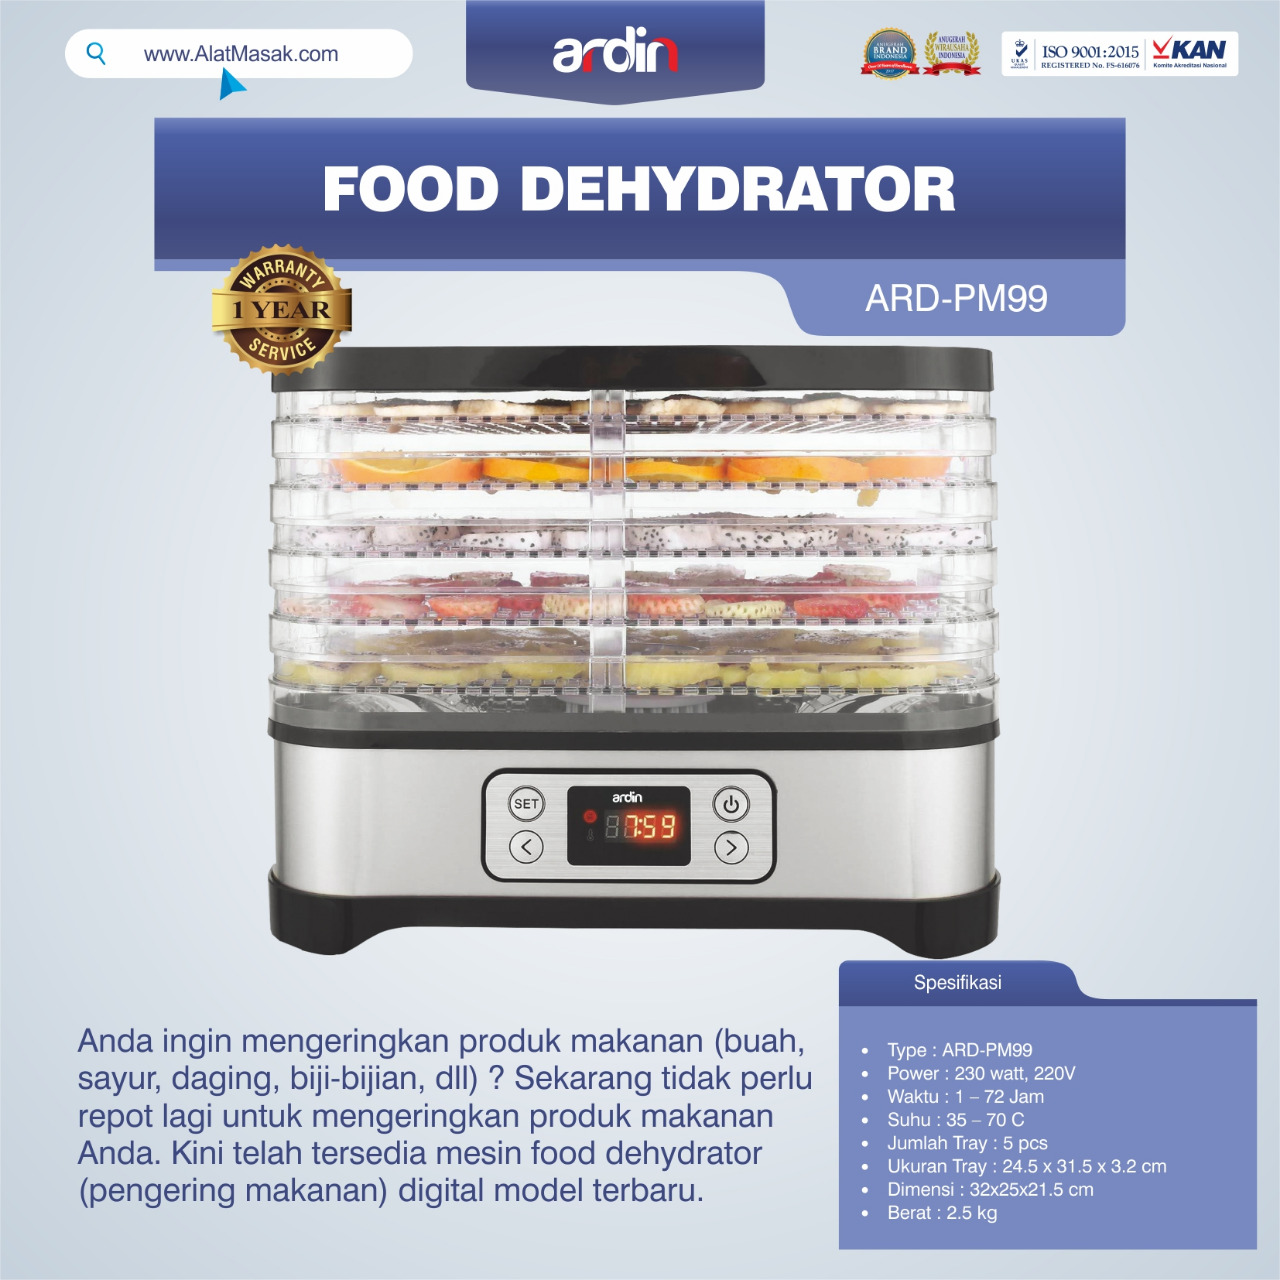 Jual Food Dehydrator ARD-PM99 di Bandung